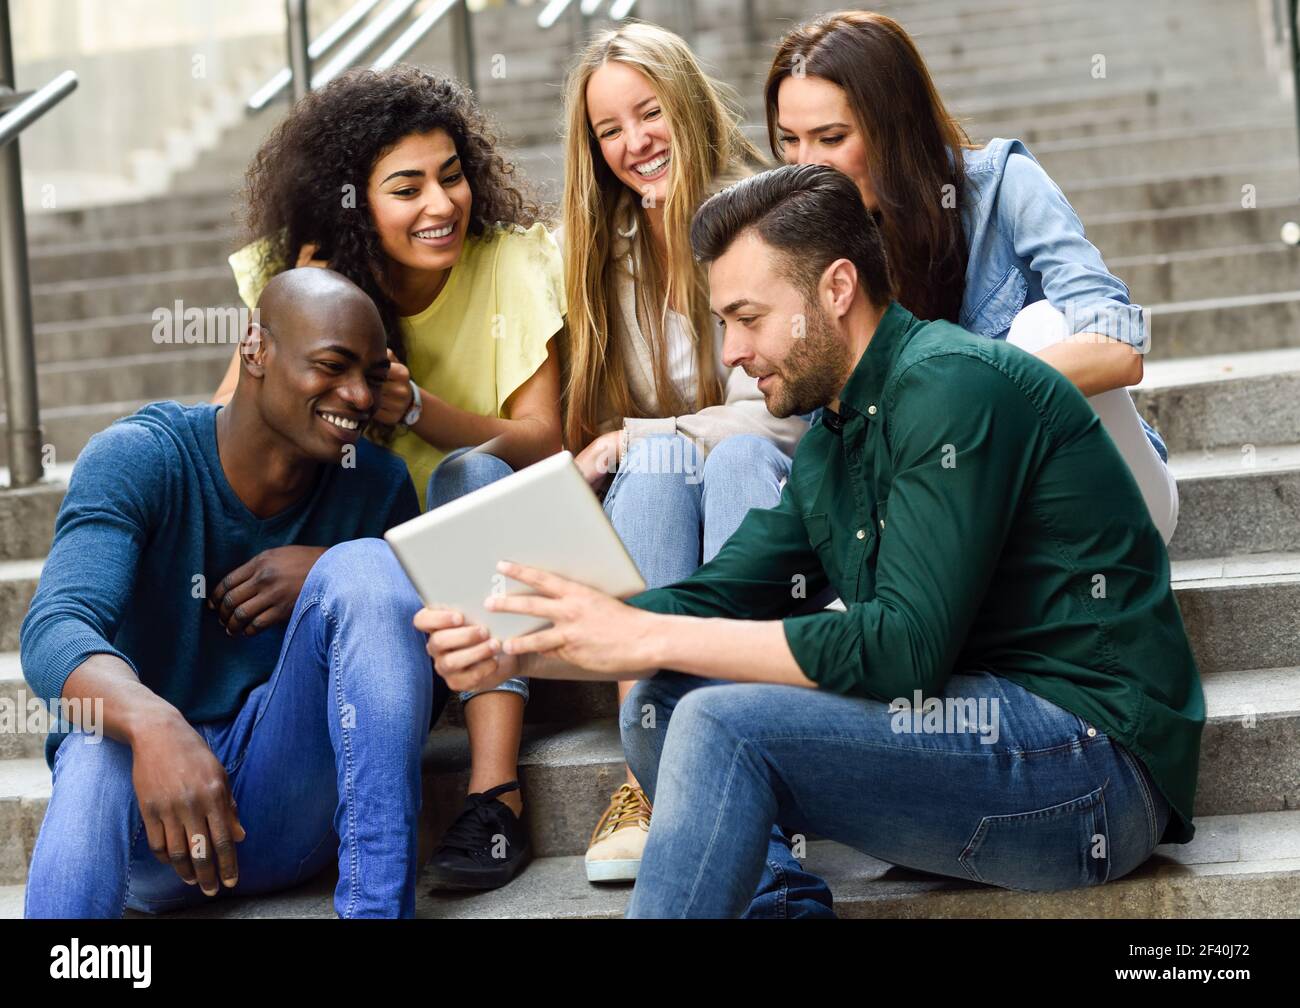 Multiethnische Gruppe von jungen Menschen, die einen Tablet-Computer im Freien im städtischen Hintergrund betrachten. Gruppe von Männern und Frauen sitzen zusammen auf Stufen.. Multiethnische Gruppe junger Menschen, die einen Tablet-Computer betrachten Stockfoto